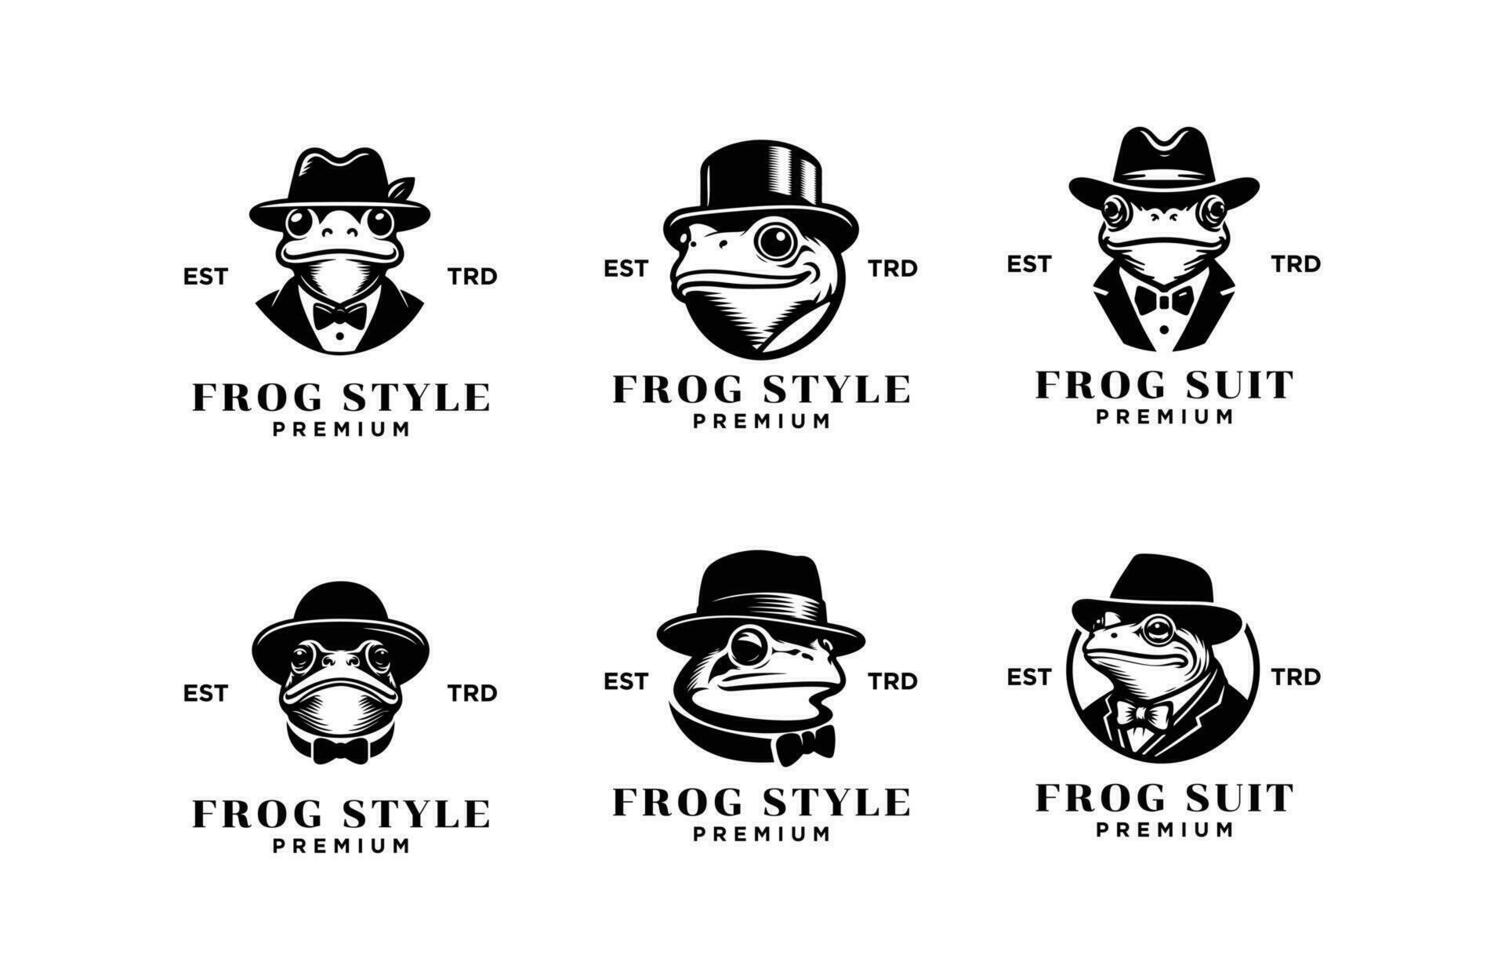 Frog Gentleman Vintage logo icon design vector